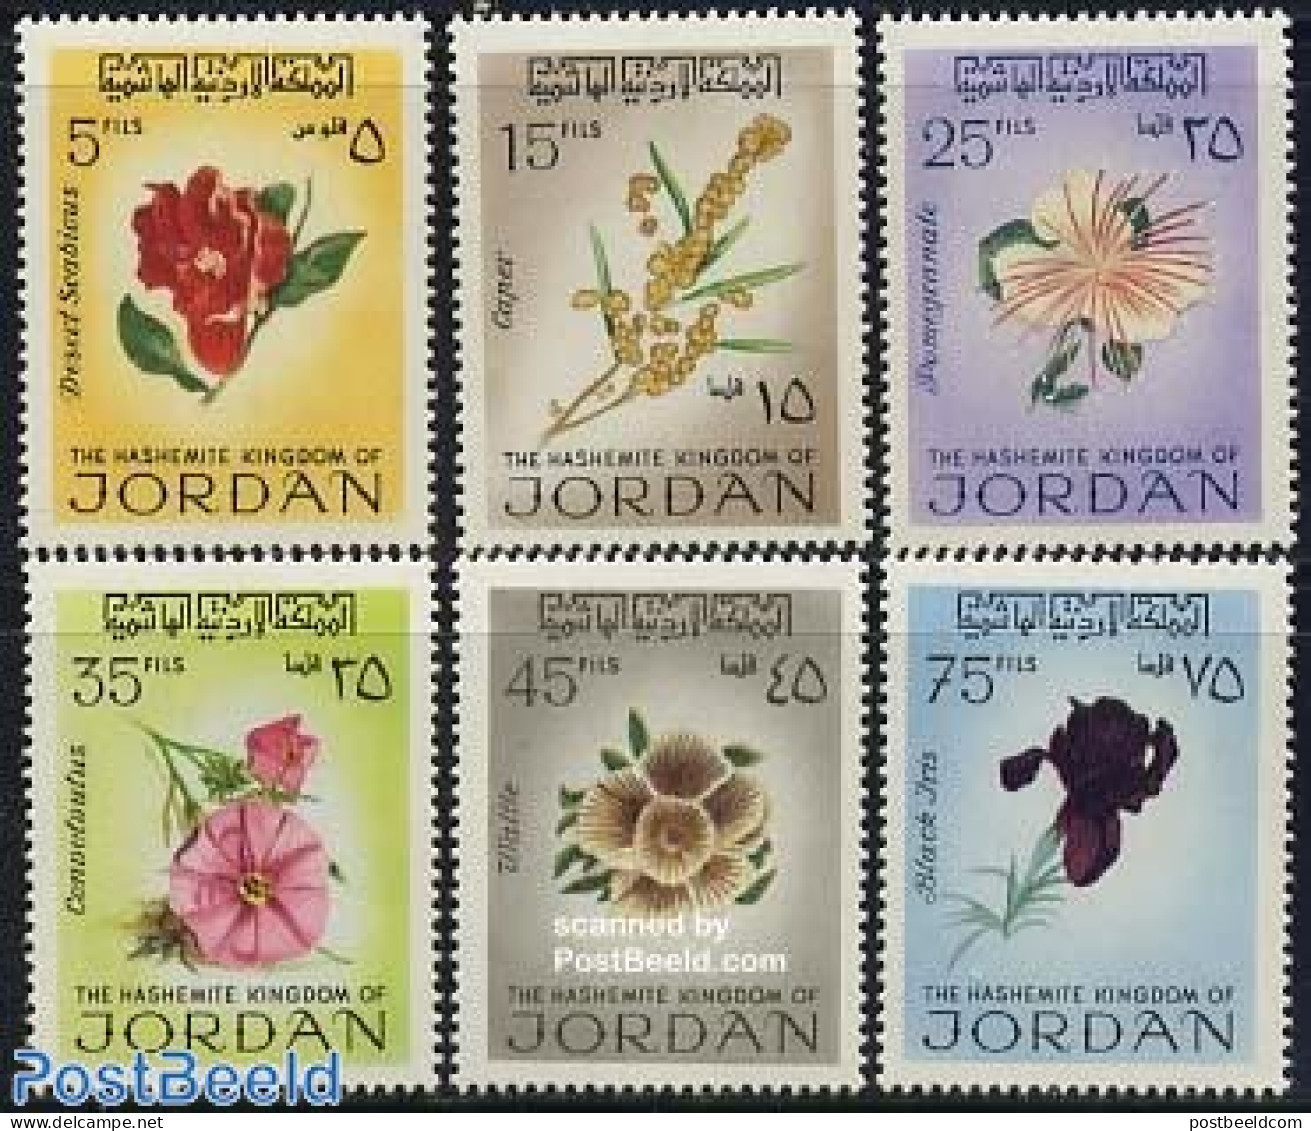 Jordan 1970 Flowers 6v, Mint NH, Nature - Flowers & Plants - Jordania